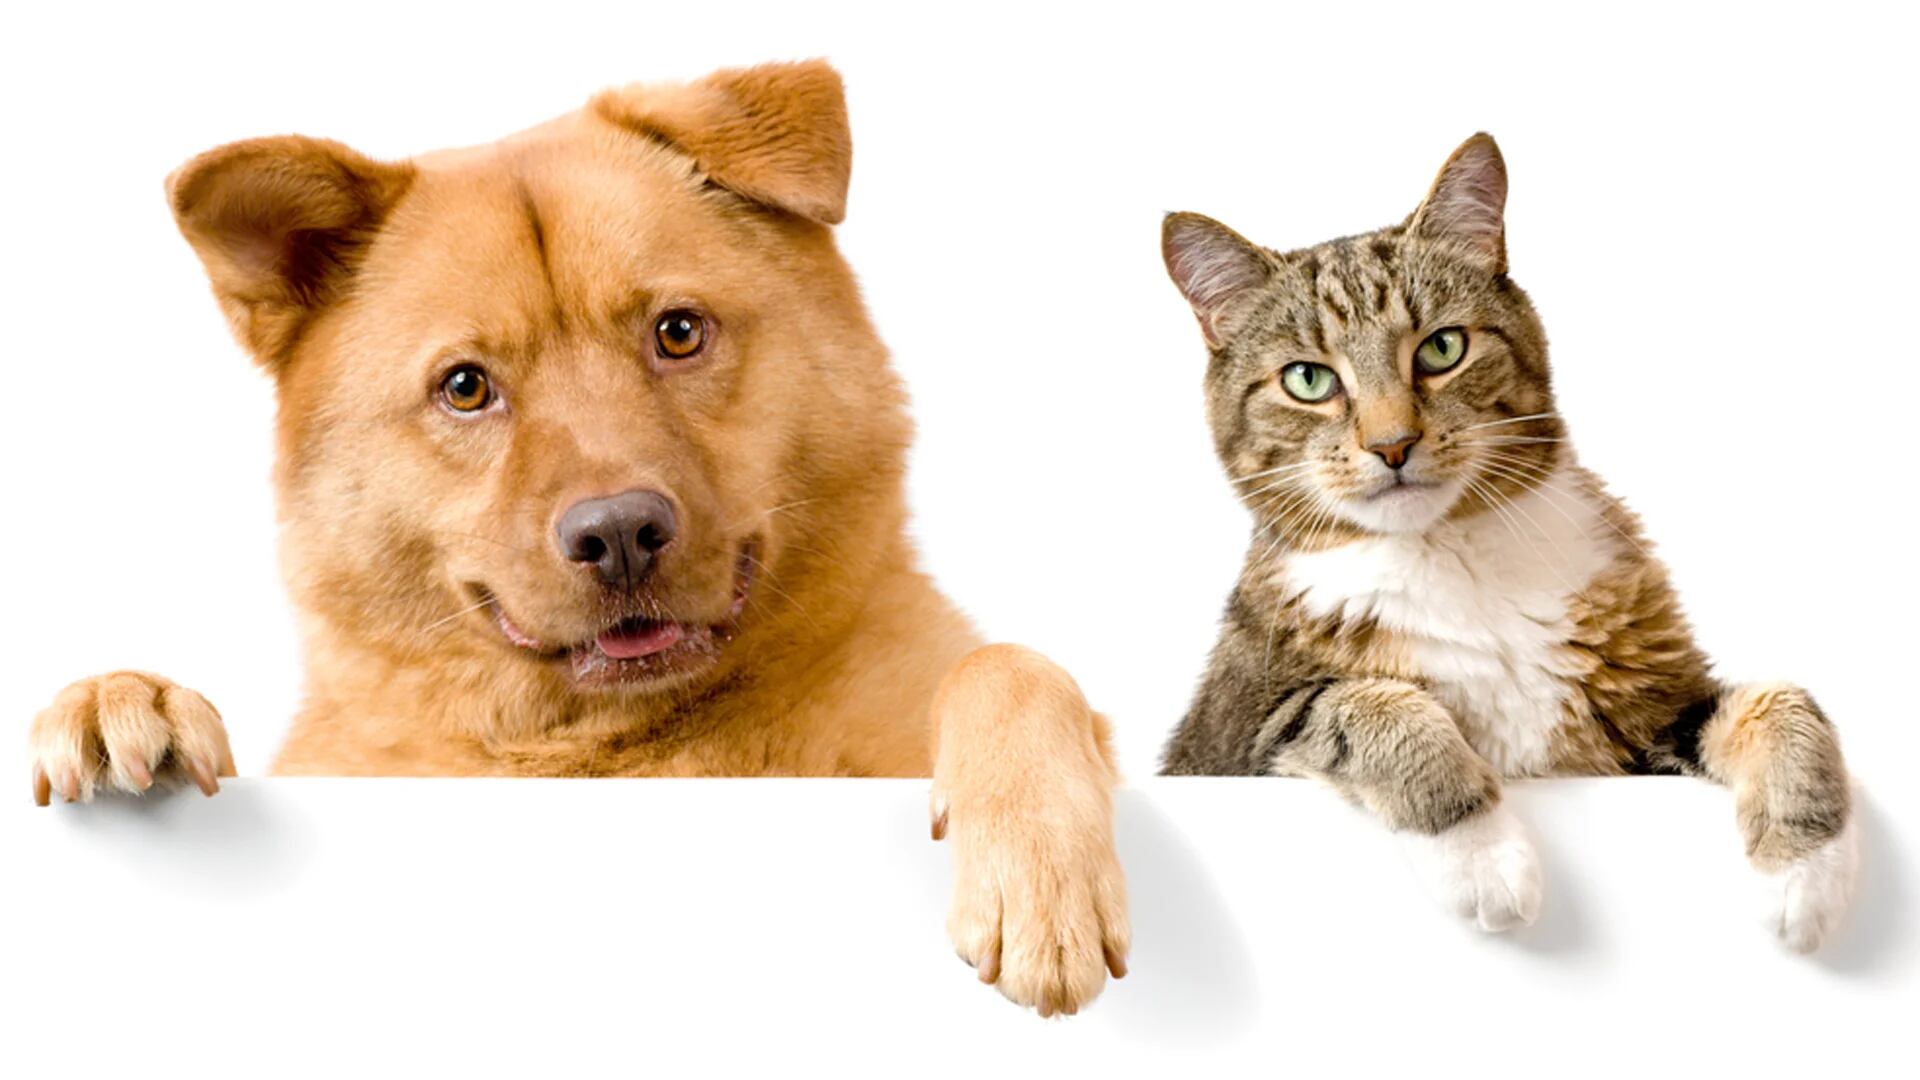 descuento Integración seriamente Test de personalidad: qué es mejor para mí, ¿un perro o un gato? - Infobae